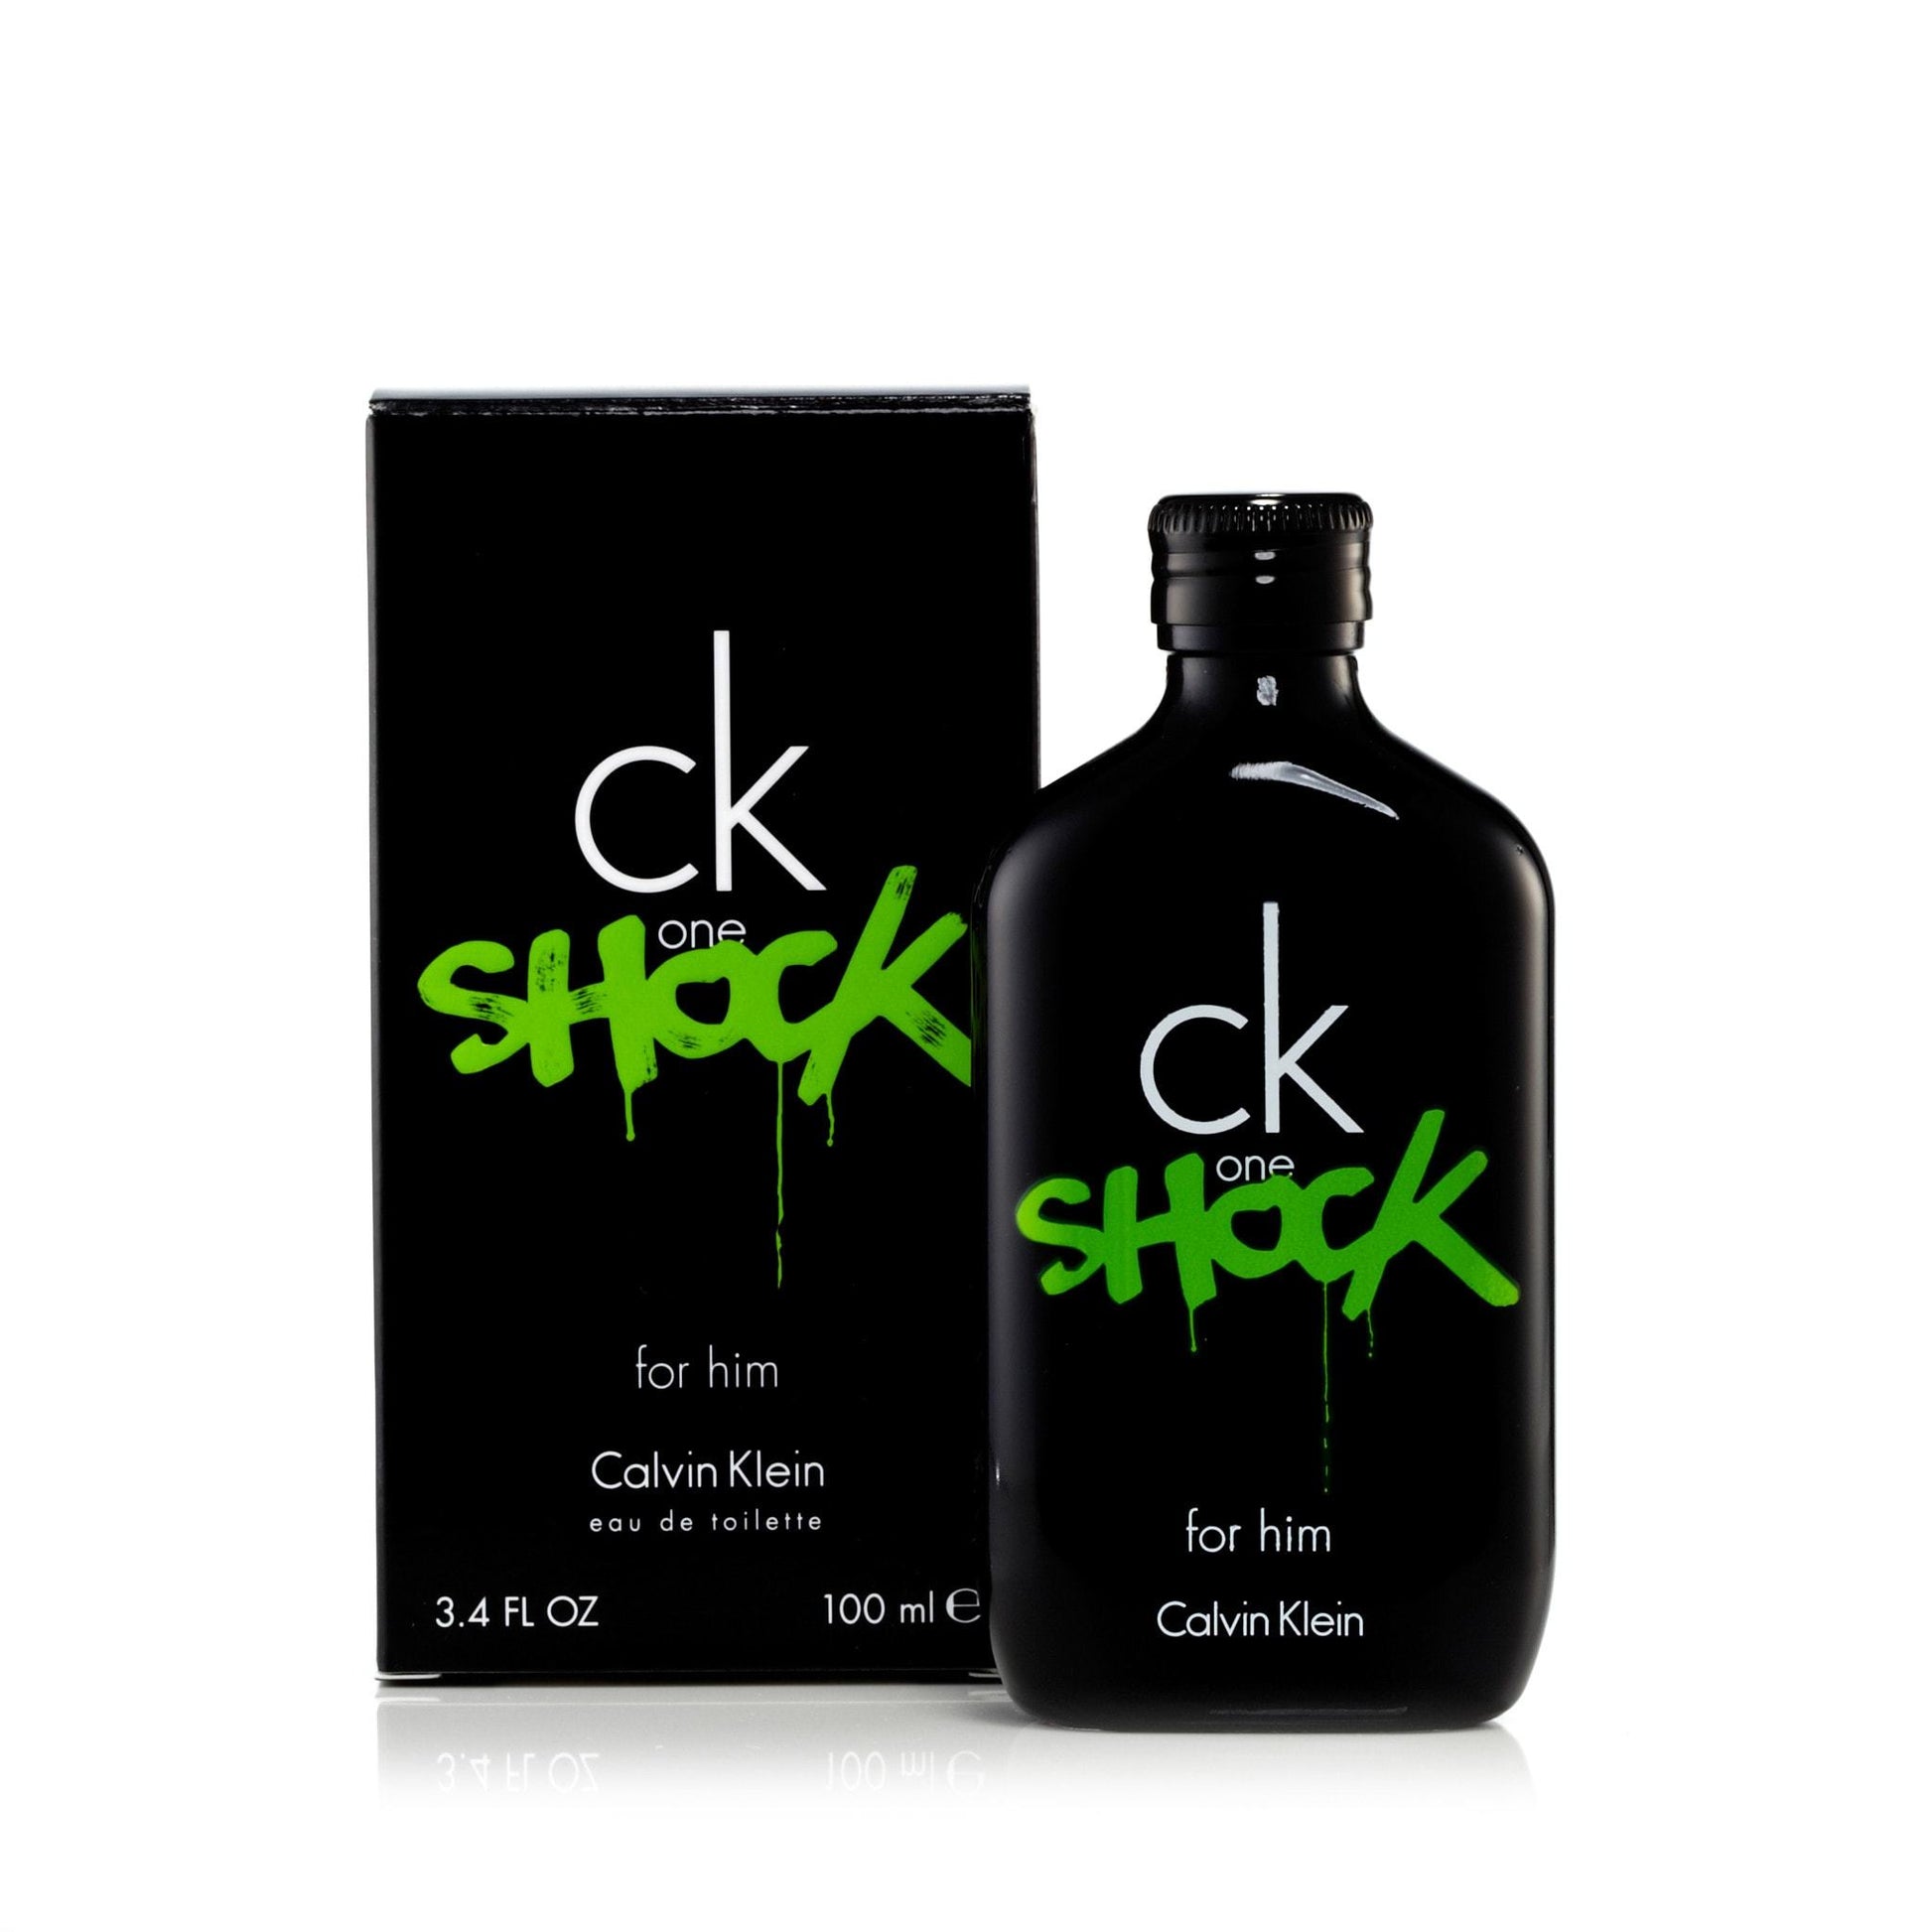 CK One Shock Eau de Toilette Spray for Men by Calvin Klein, Product image 1